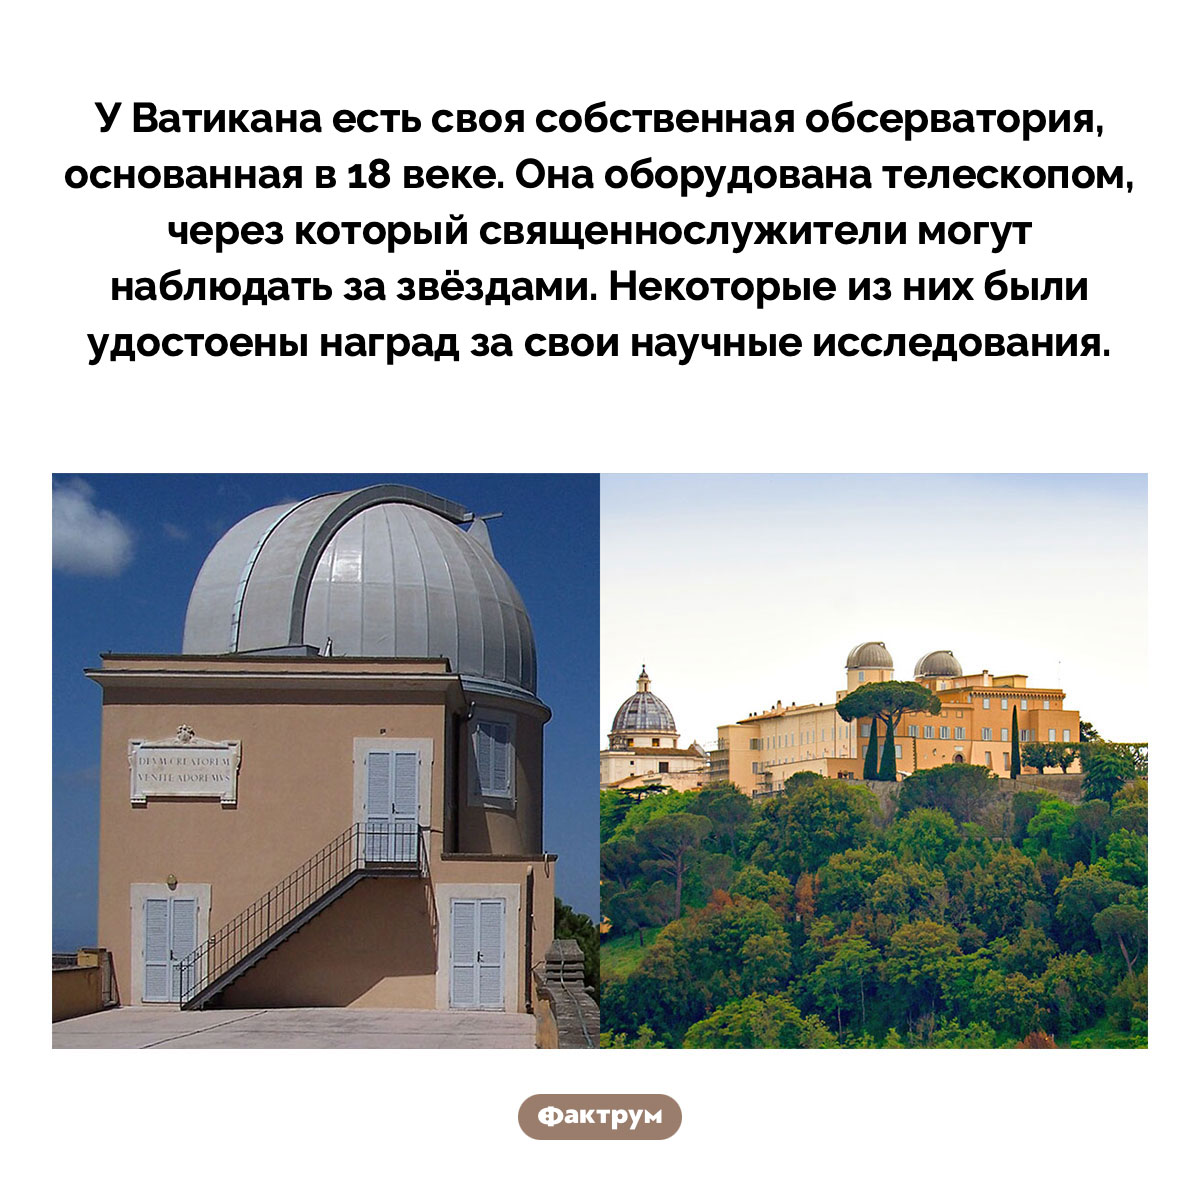 Ватиканские священники изучают звёзды. У Ватикана есть своя собственная обсерватория, основанная в 18 веке. Она оборудована телескопом, через который священнослужители могут наблюдать за звёздами. Некоторые из них были удостоены наград за свои научные исследования.